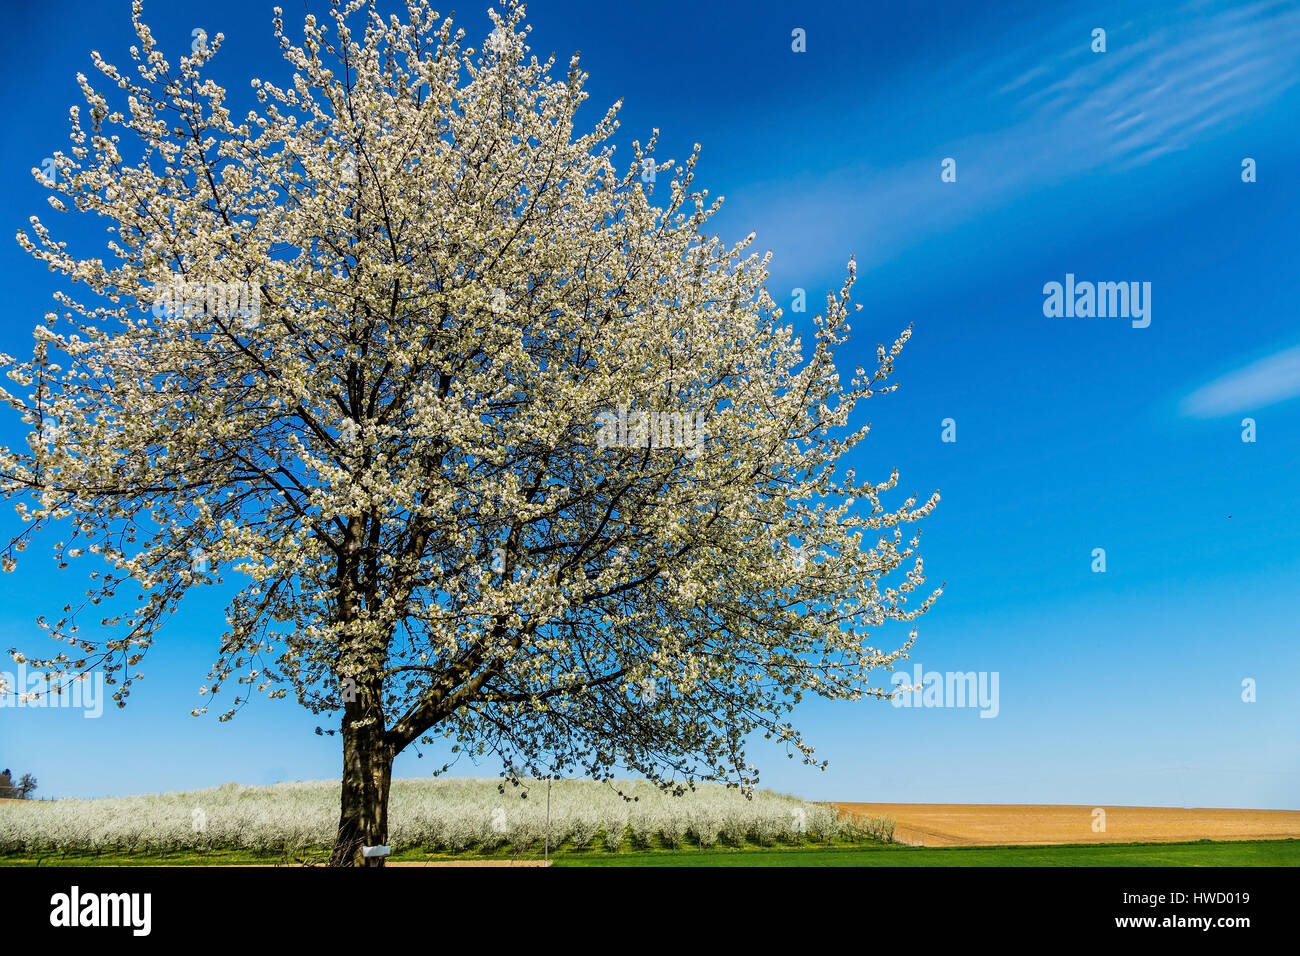 Ein blühender Obstbaum im Frühjahr. Vor dem blauen Himmel, Ein Blühender Obstbaum Im Frühling. Vor Blauem Himmel Stockfoto